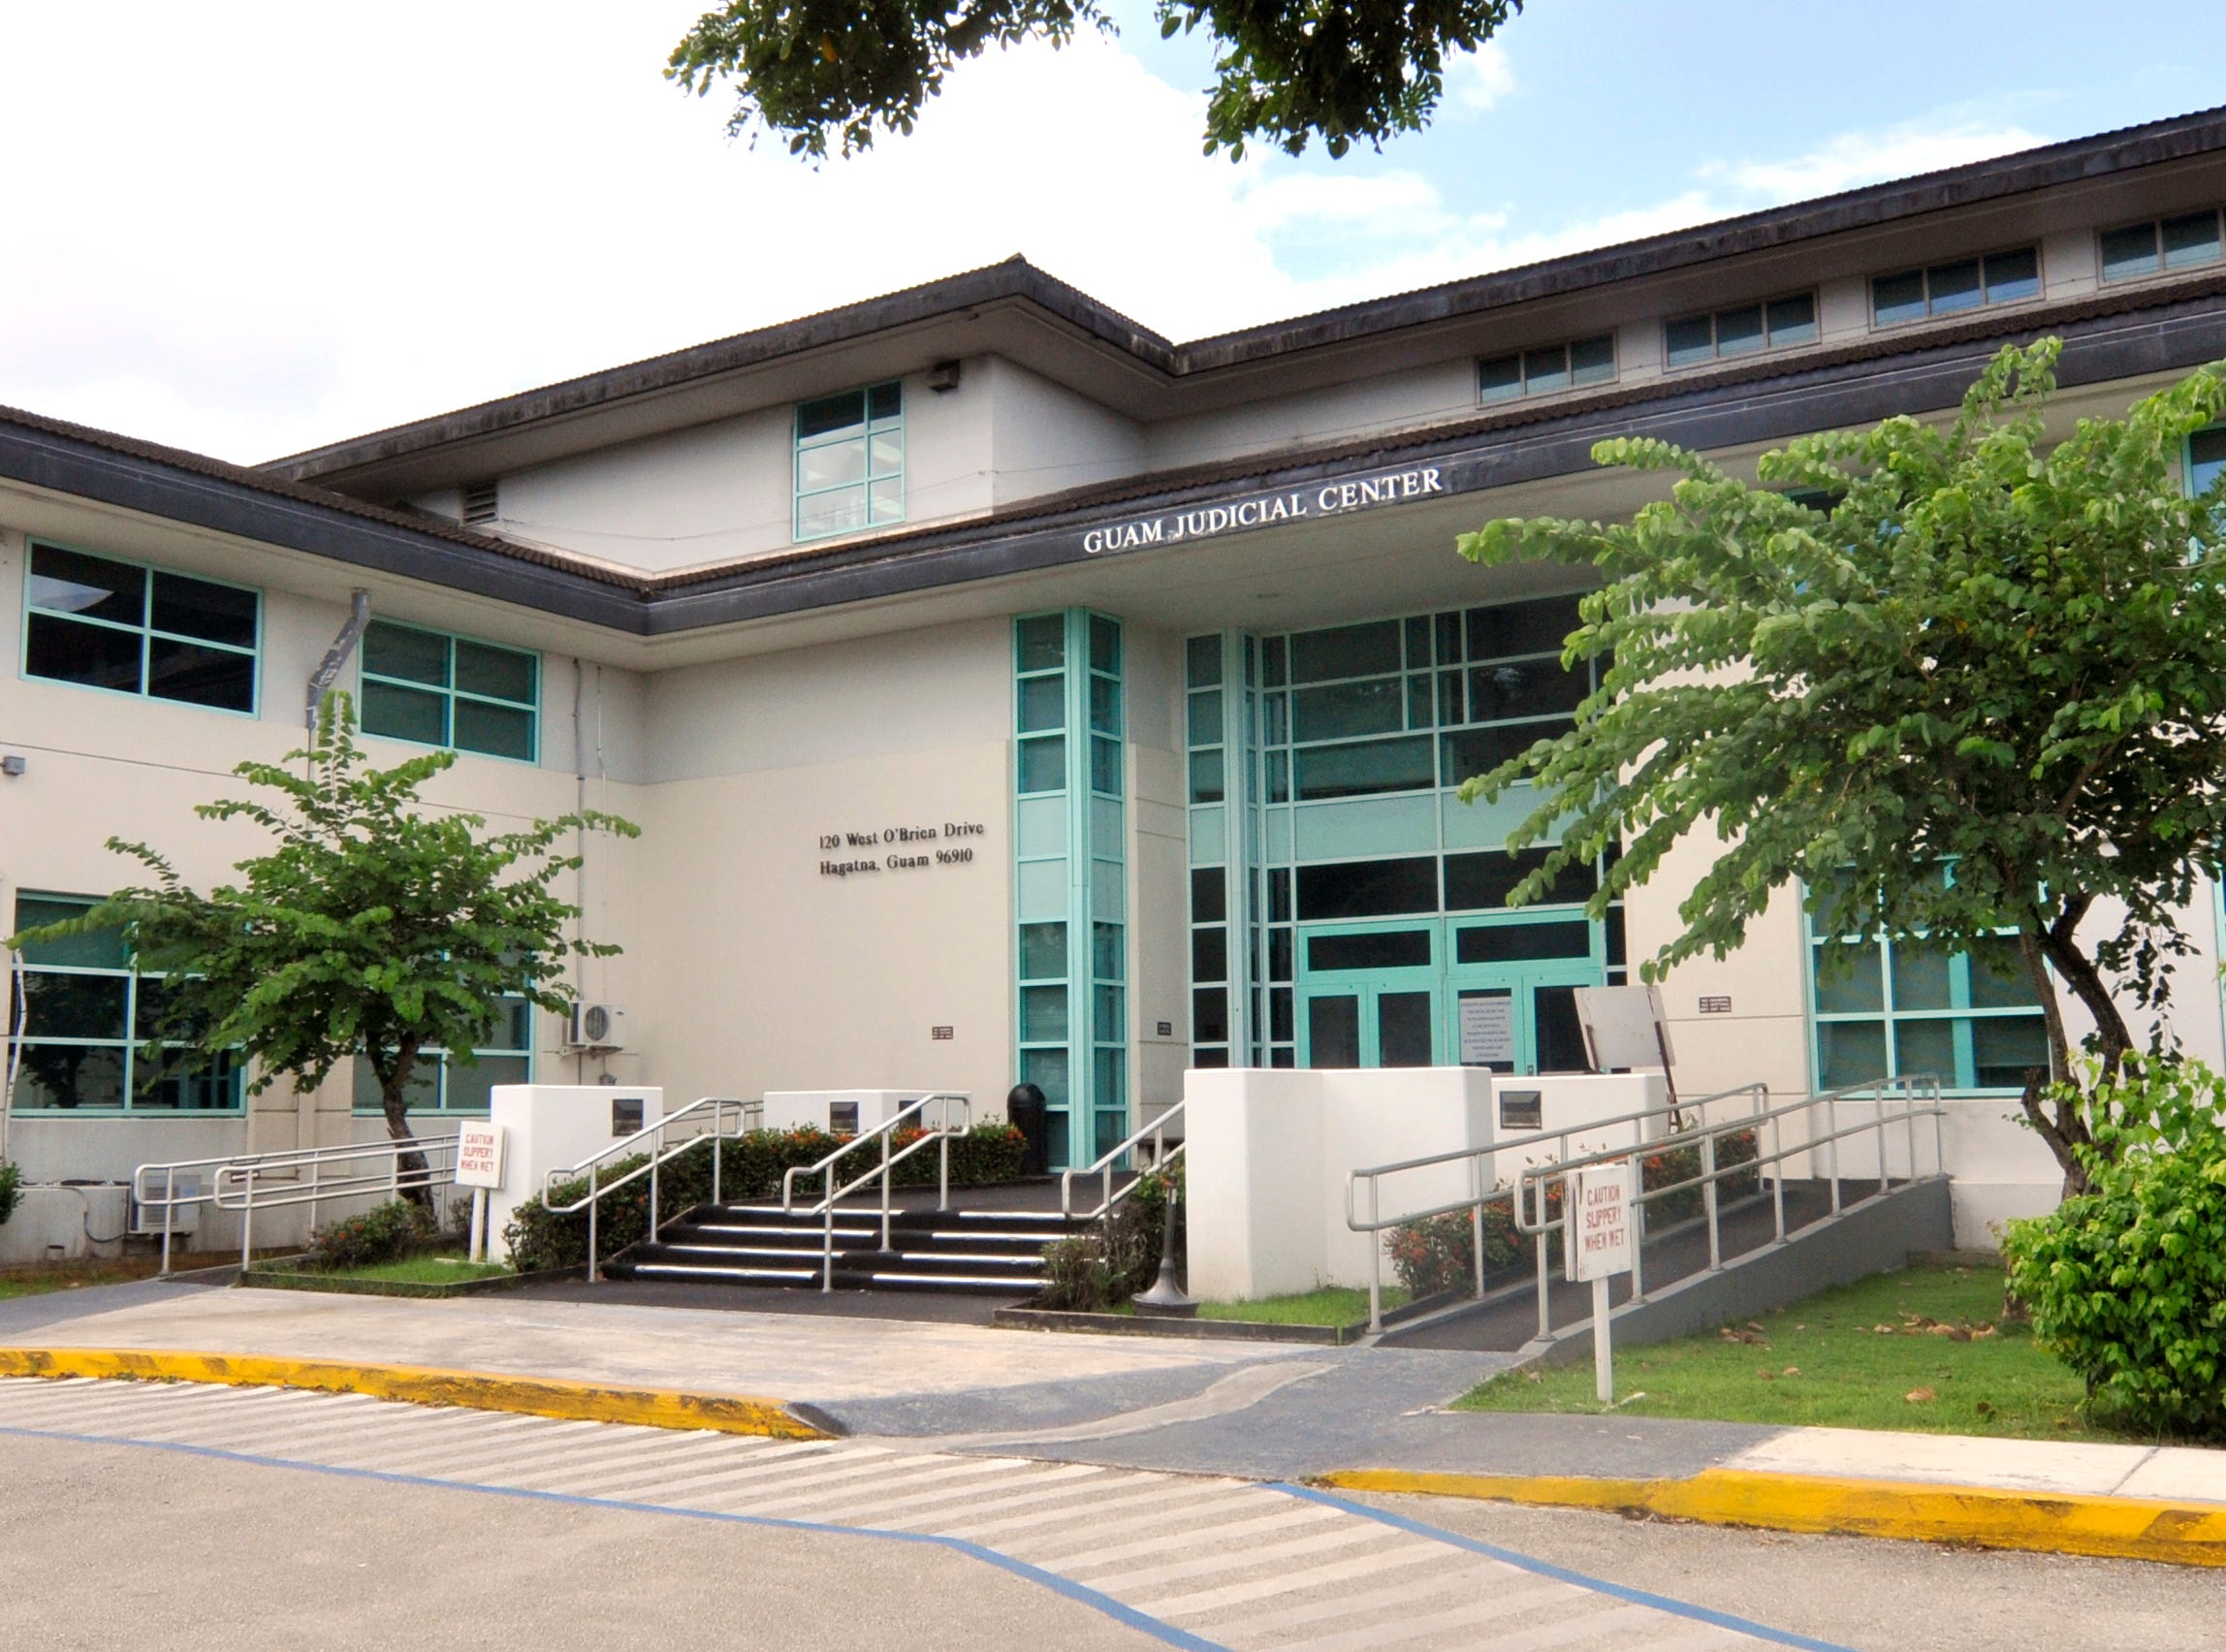 The Guam Judicial Center.